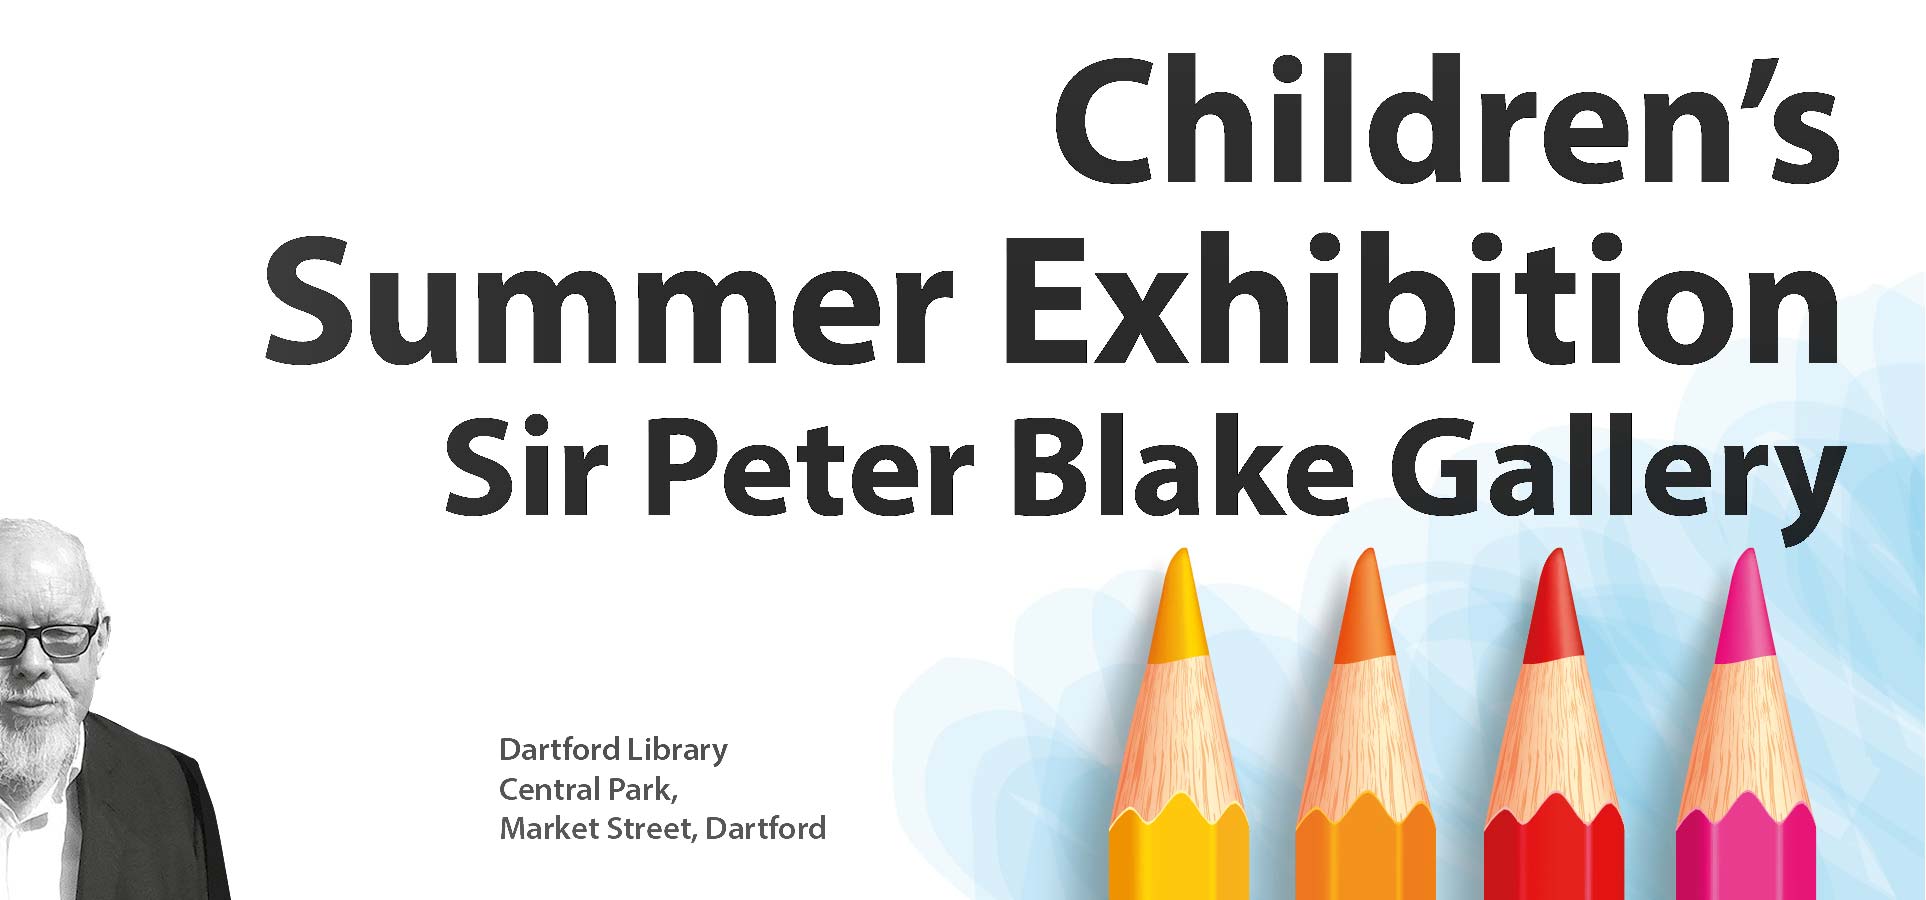 Children's Summer Exhibition